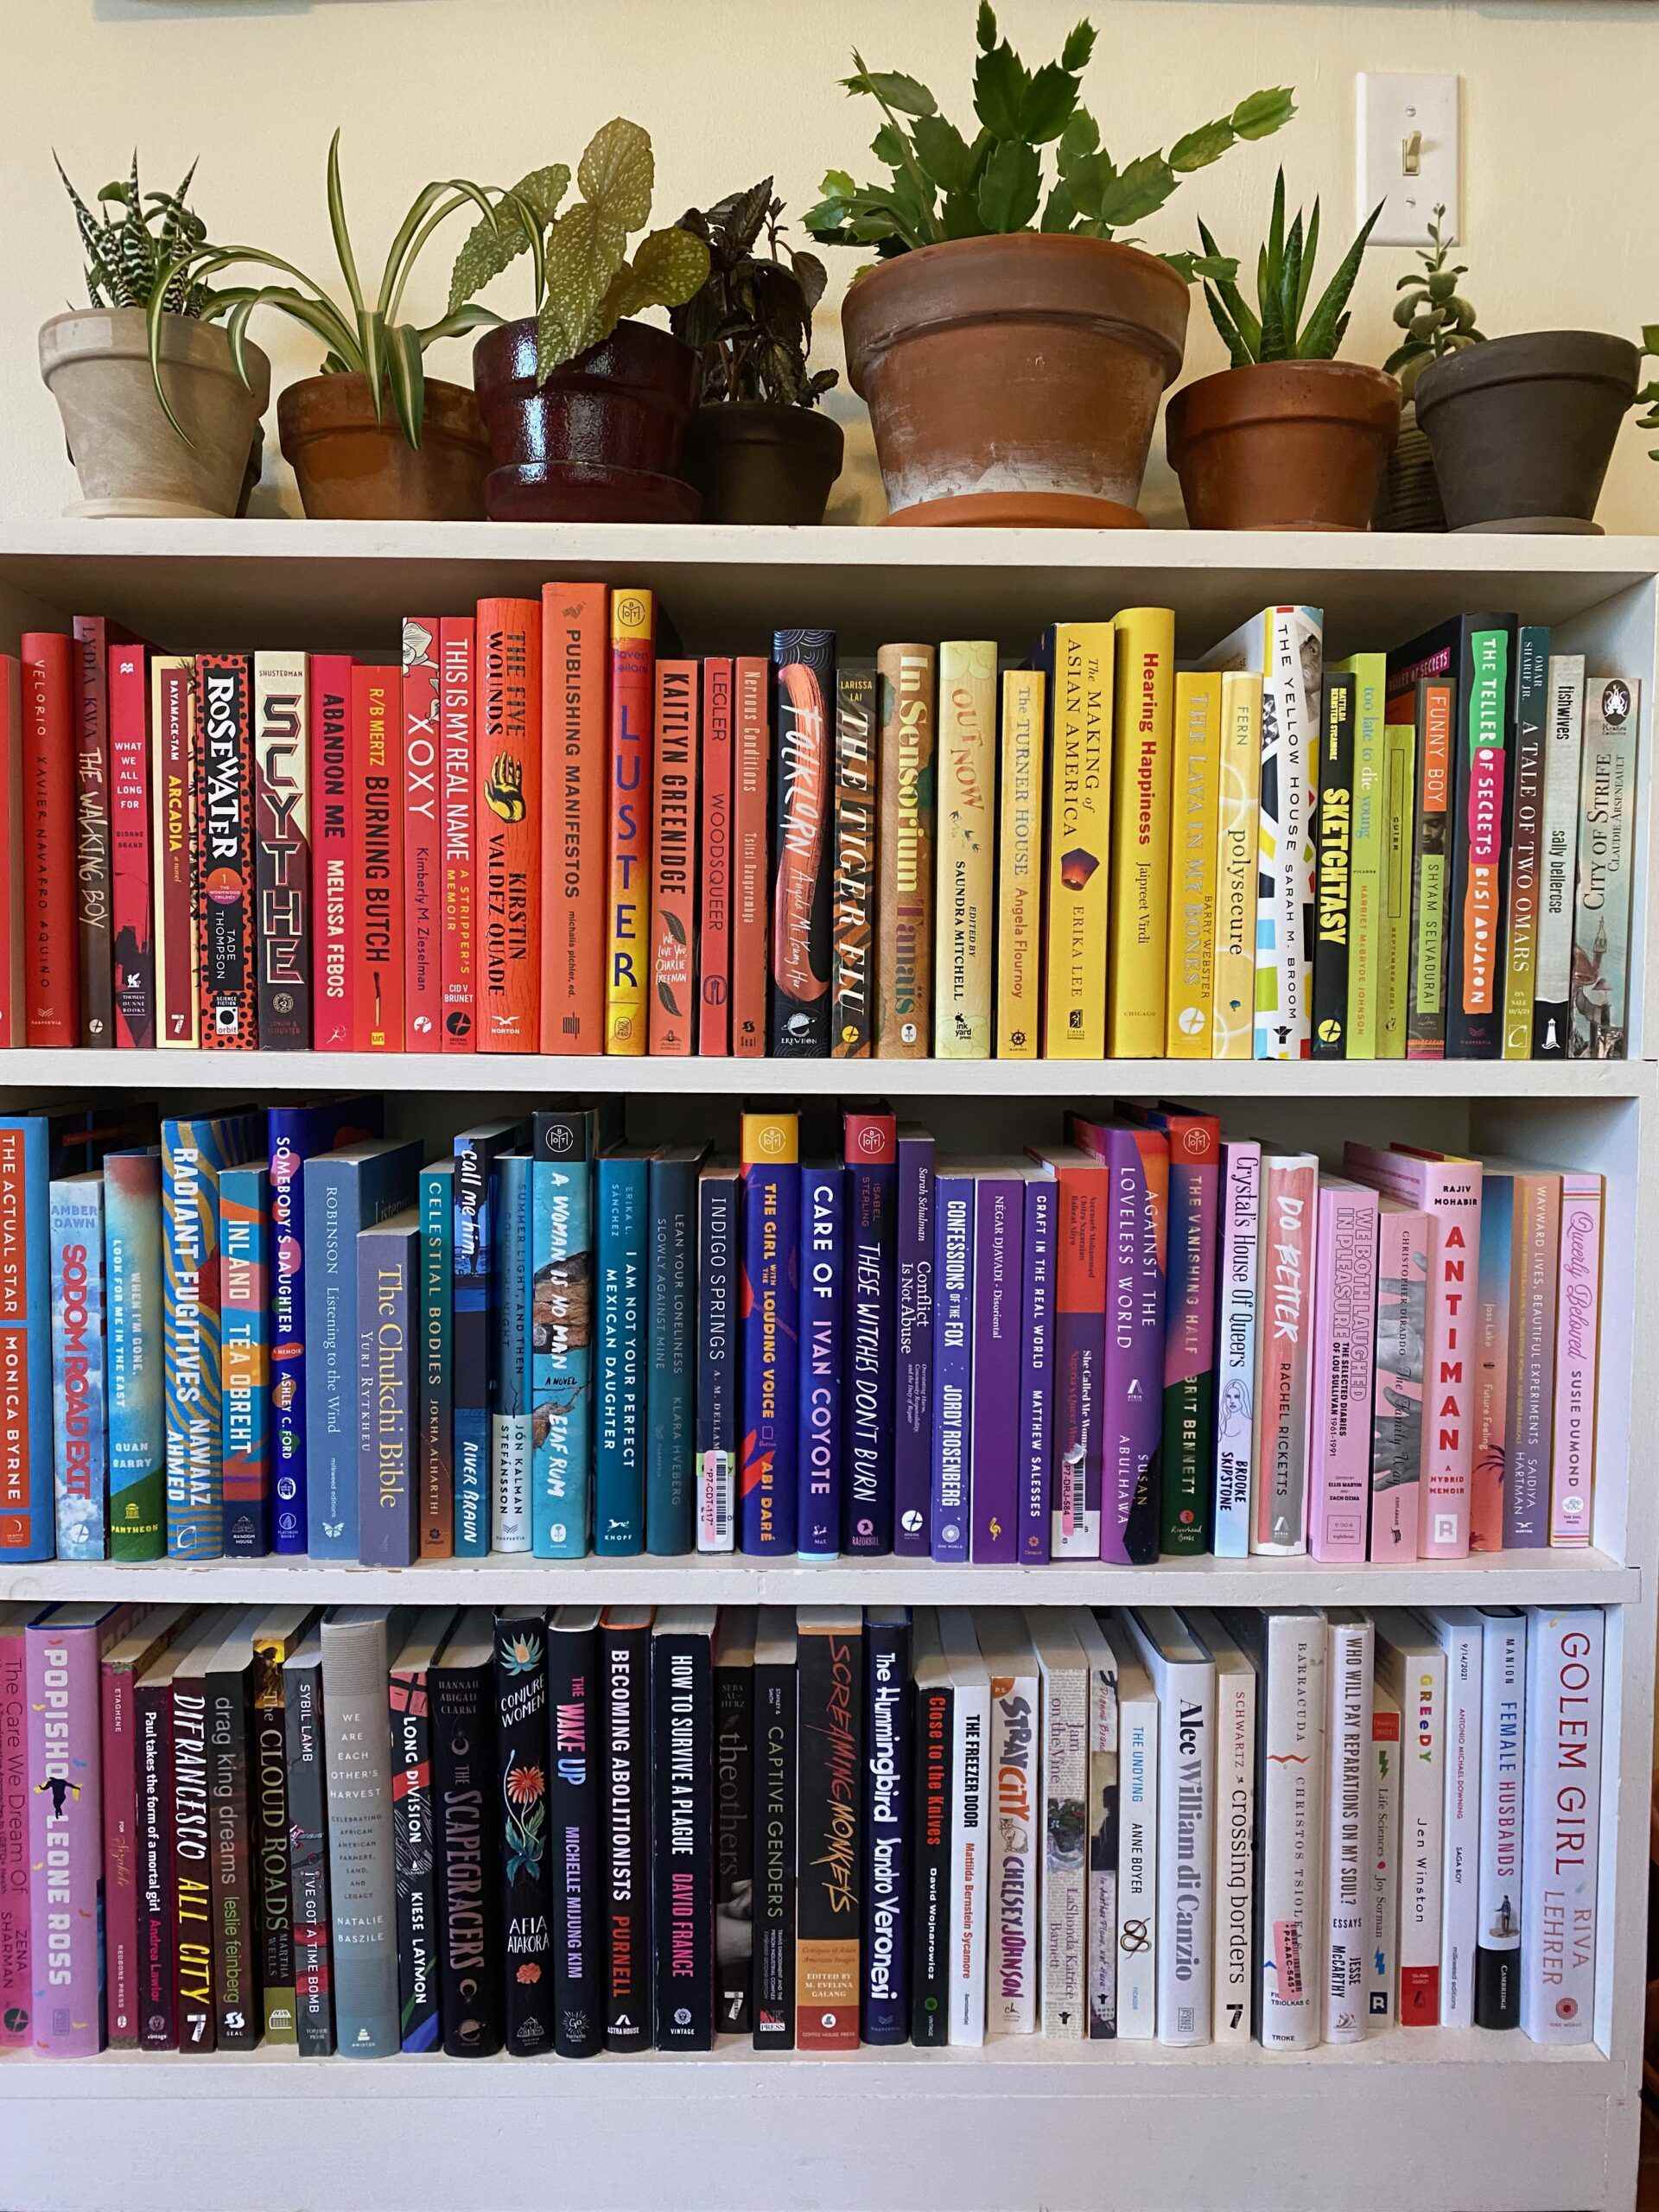 Une bibliothèque blanche avec trois étagères de livres disposées selon les couleurs des arcs-en-ciel.  Le haut de l'étagère est plein de plantes.  Photo de l'auteur.